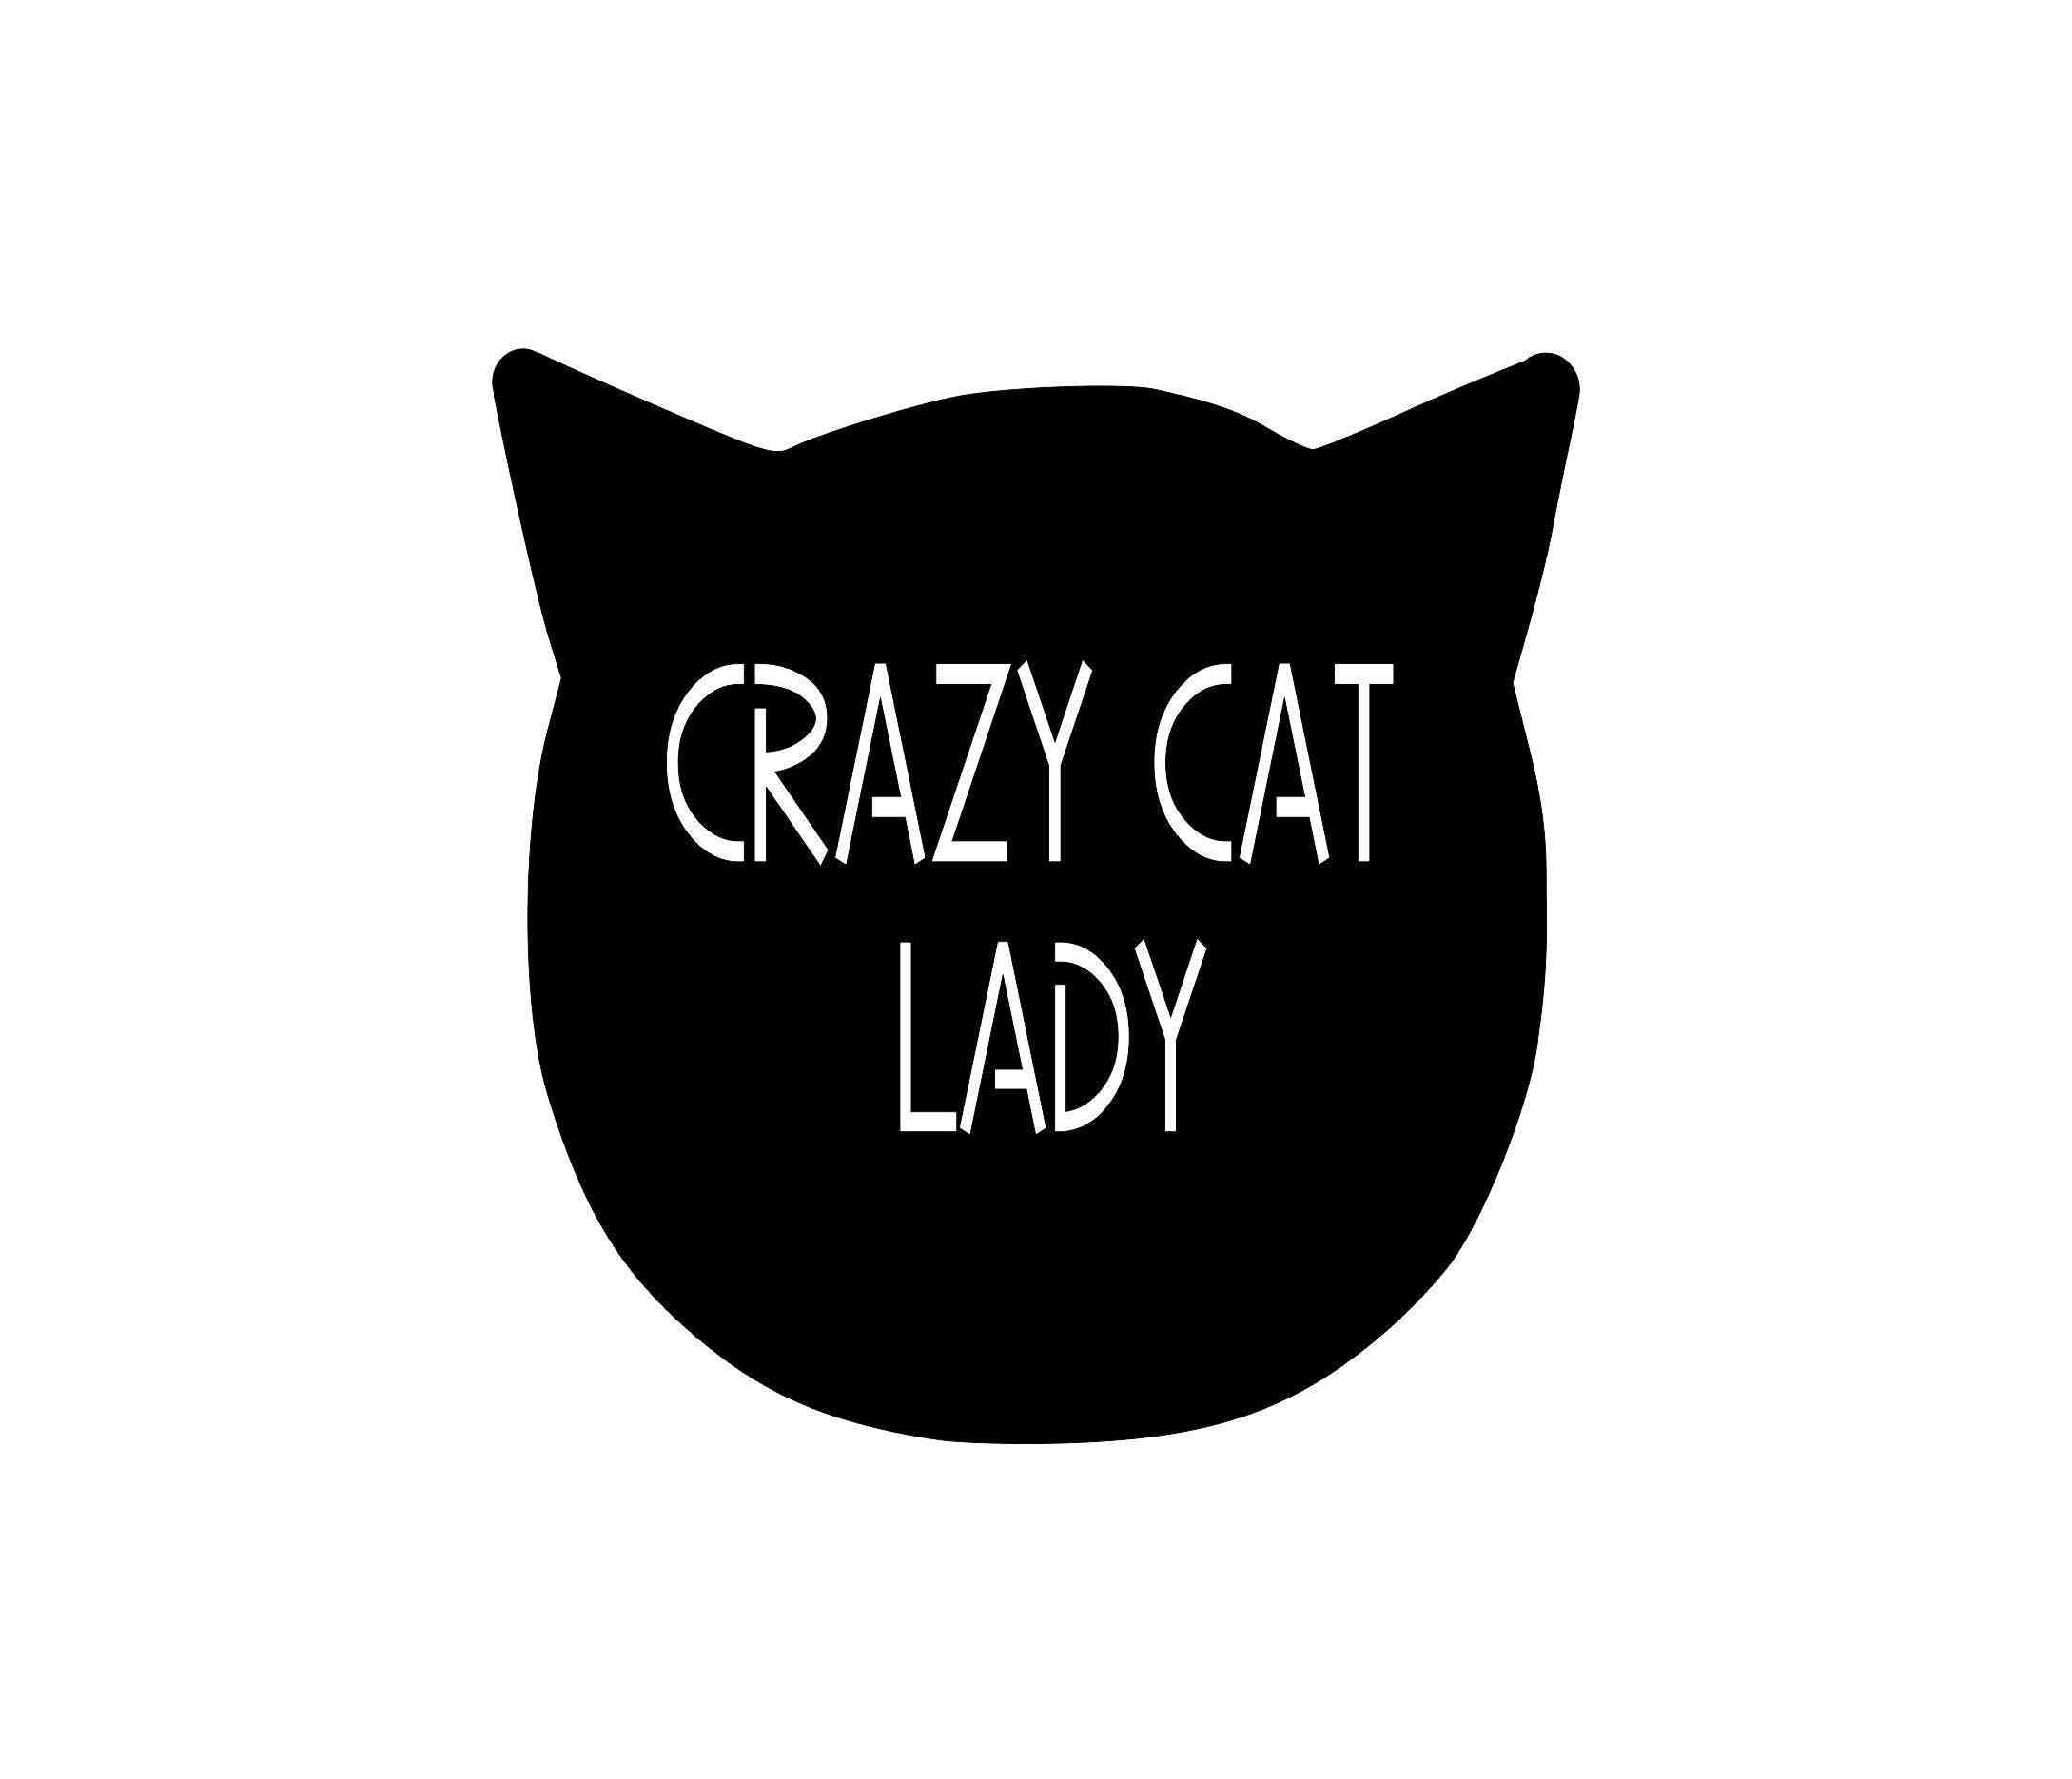 Crazy Cat Lady Metal Art